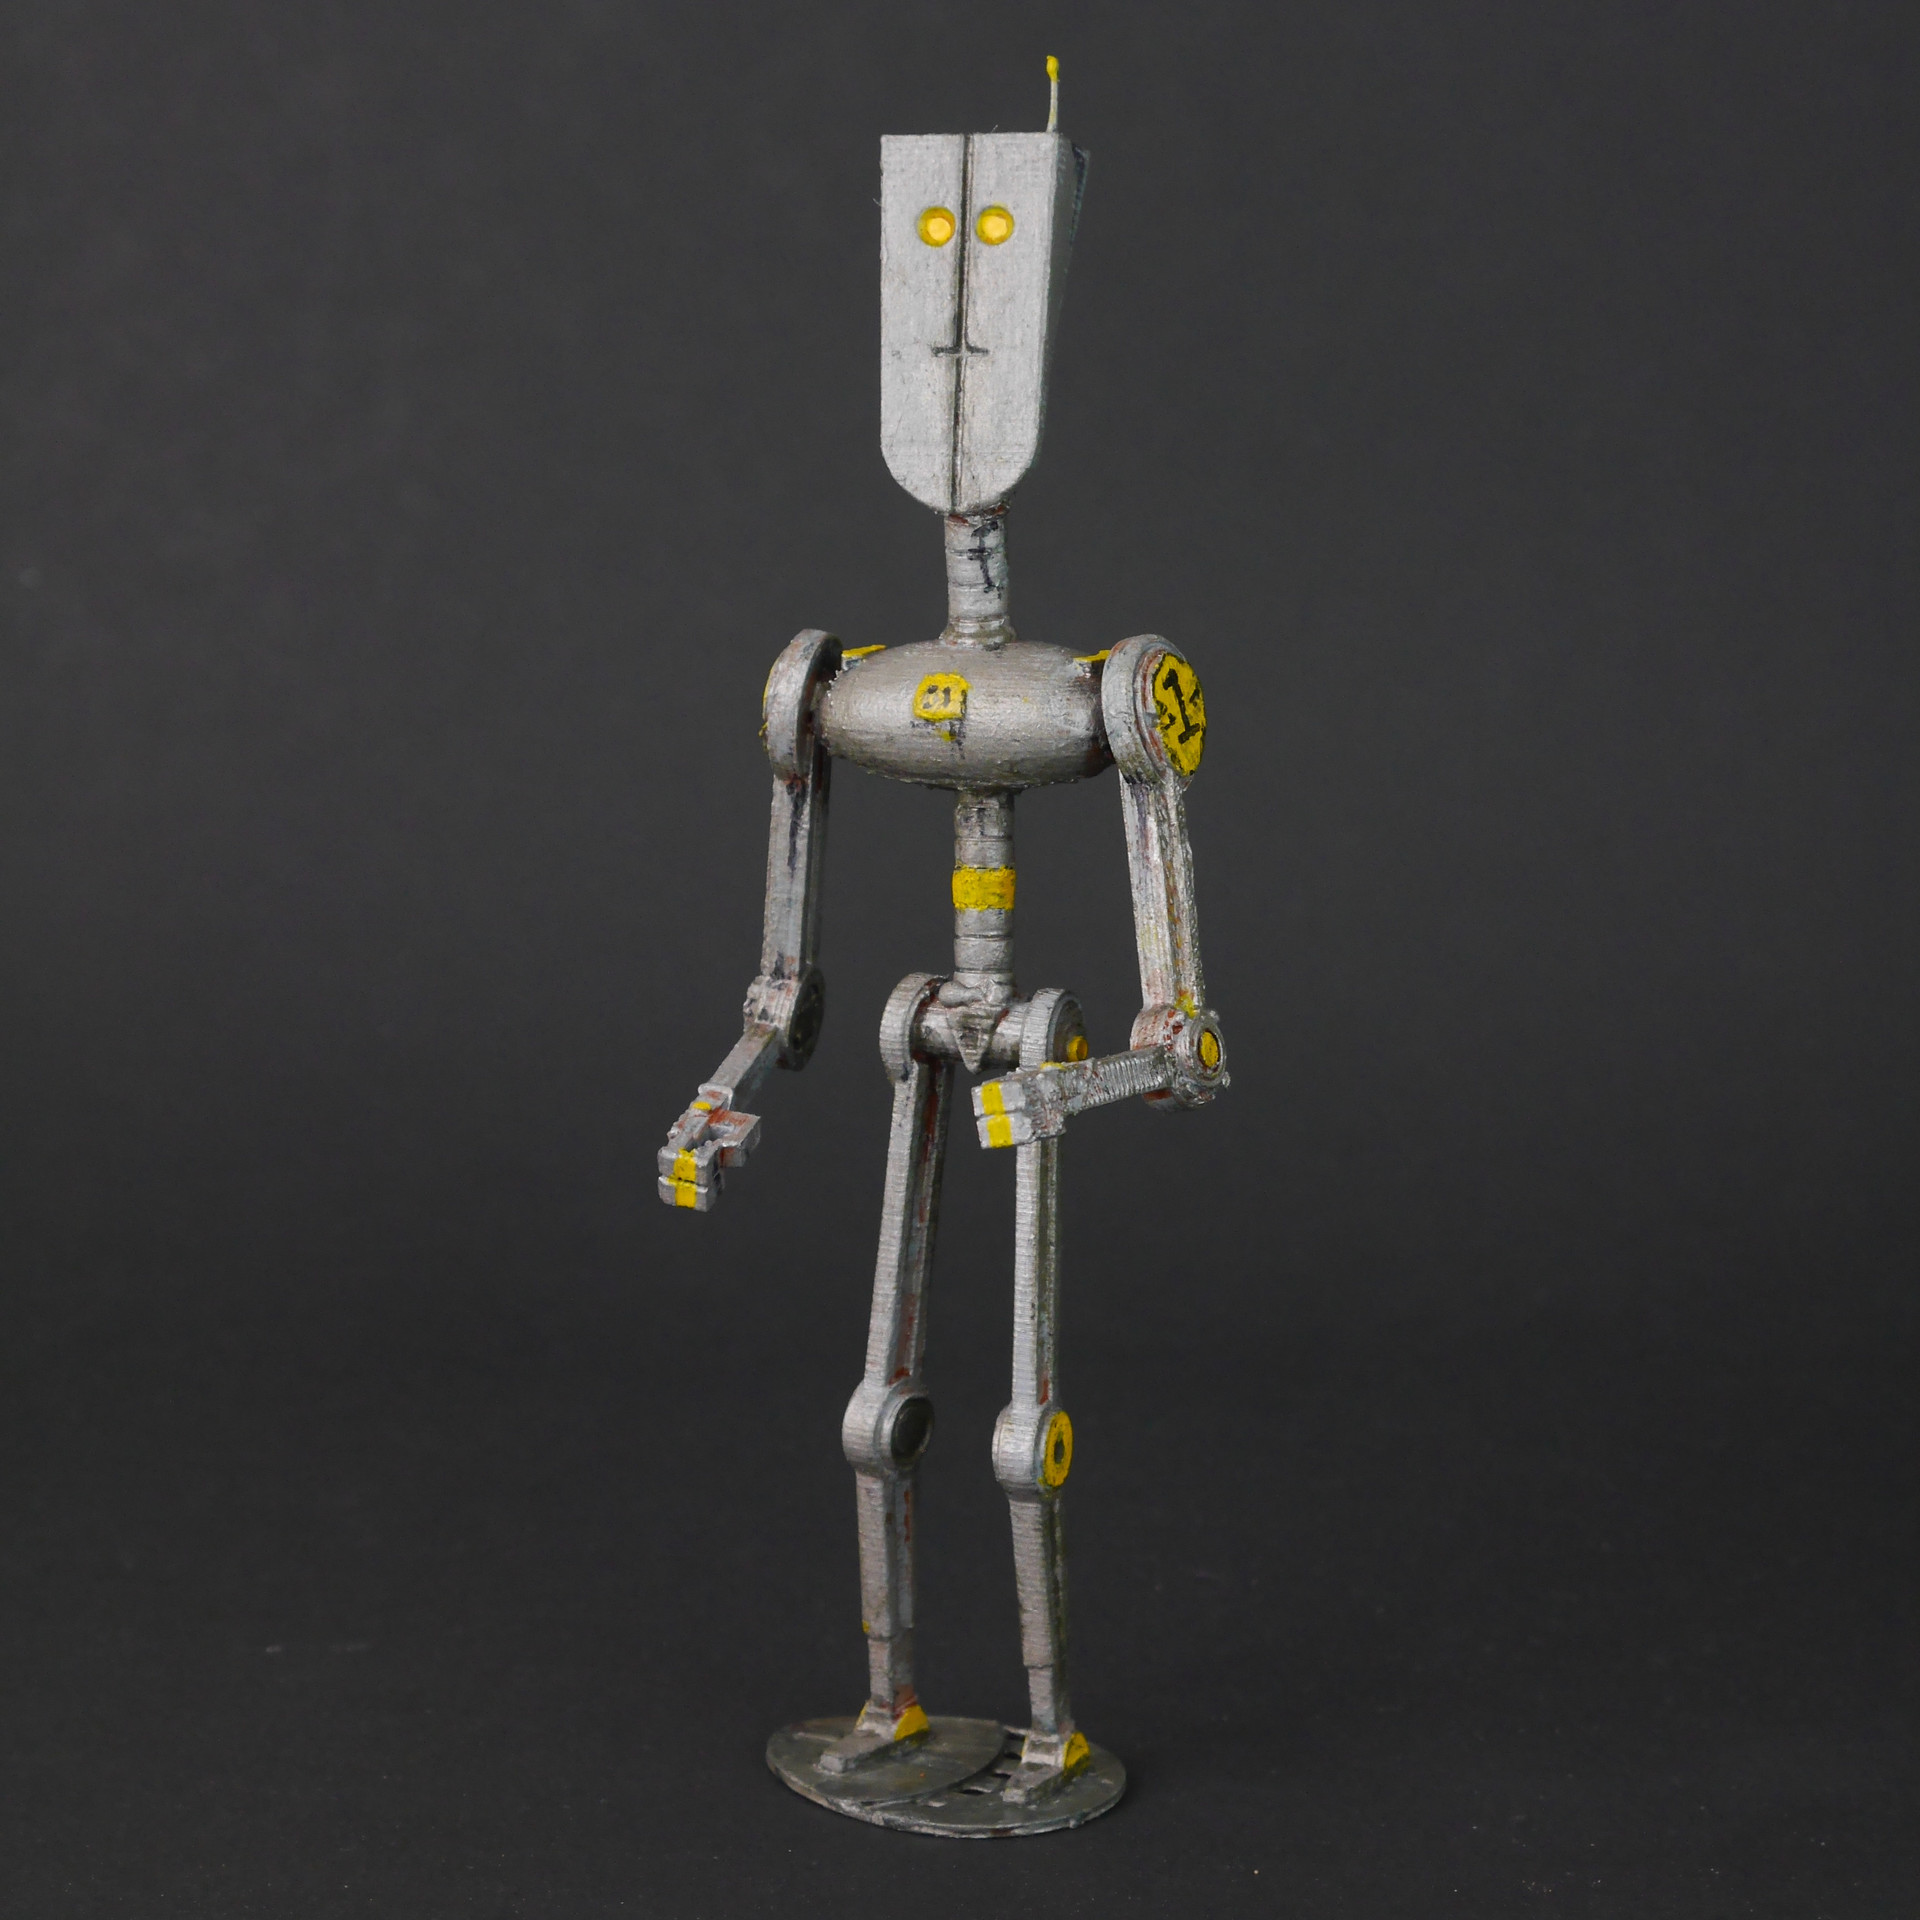 Skinny Bot